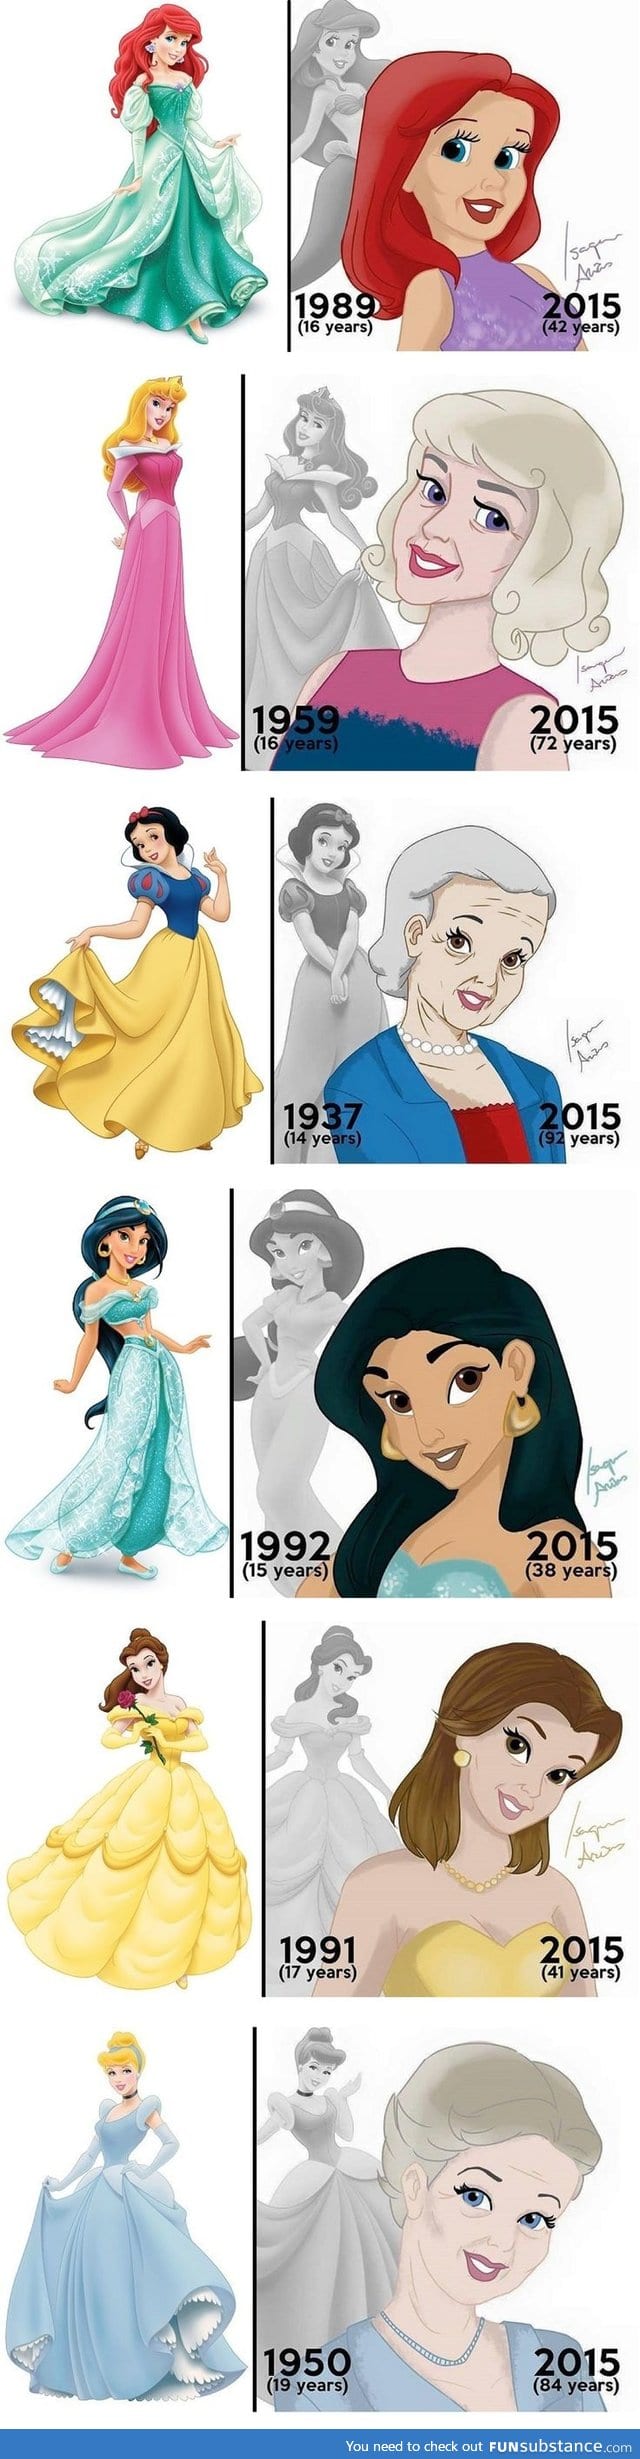 Disney princesses in 2015